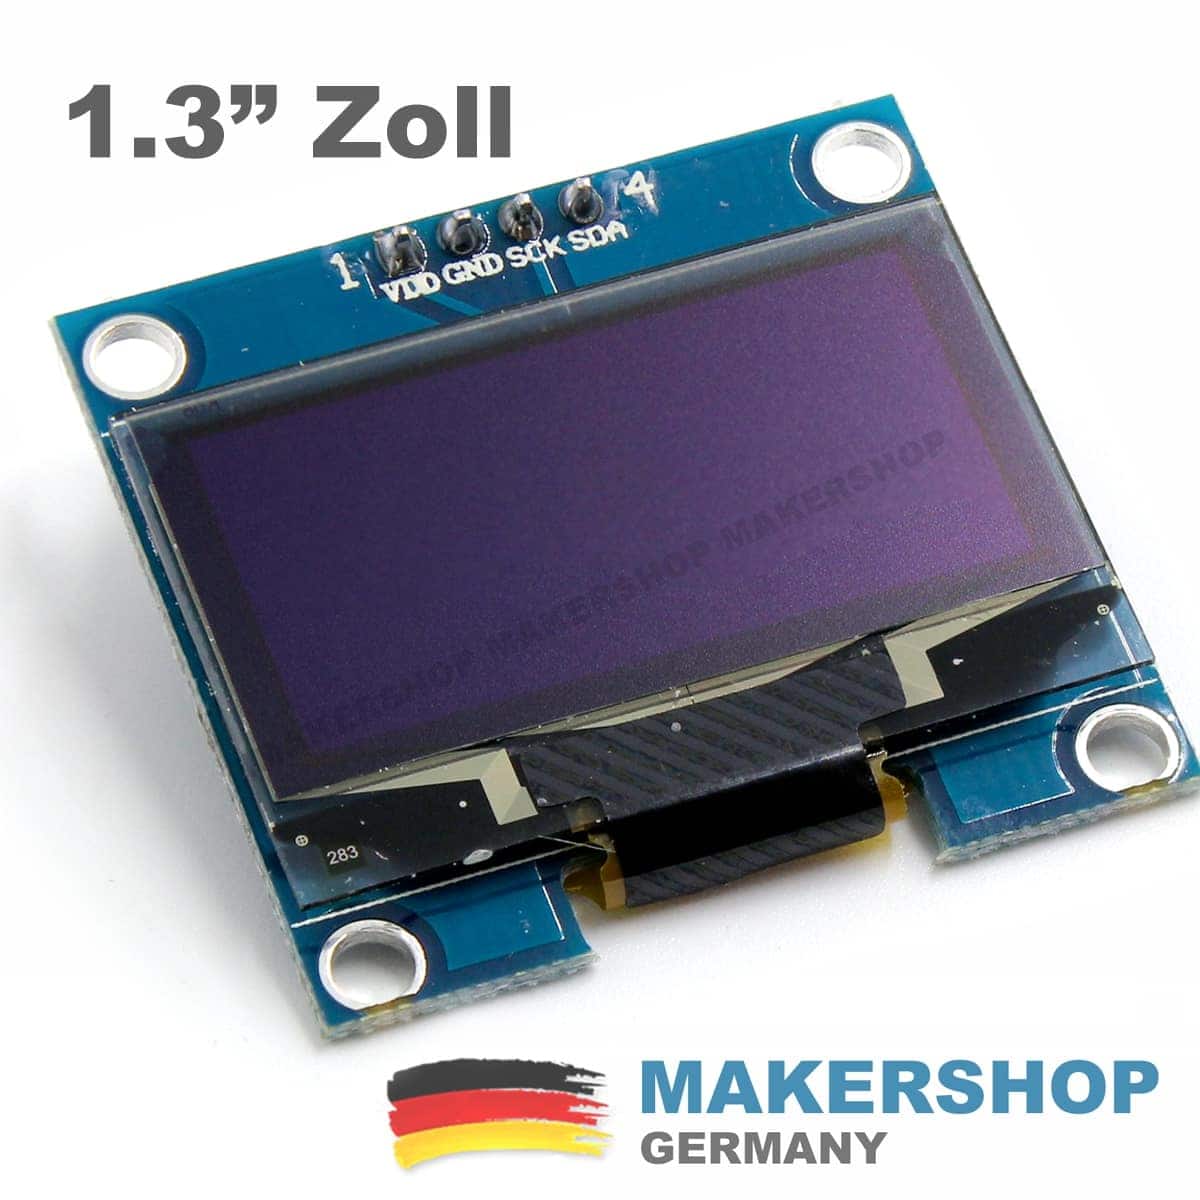 www.makershop.de